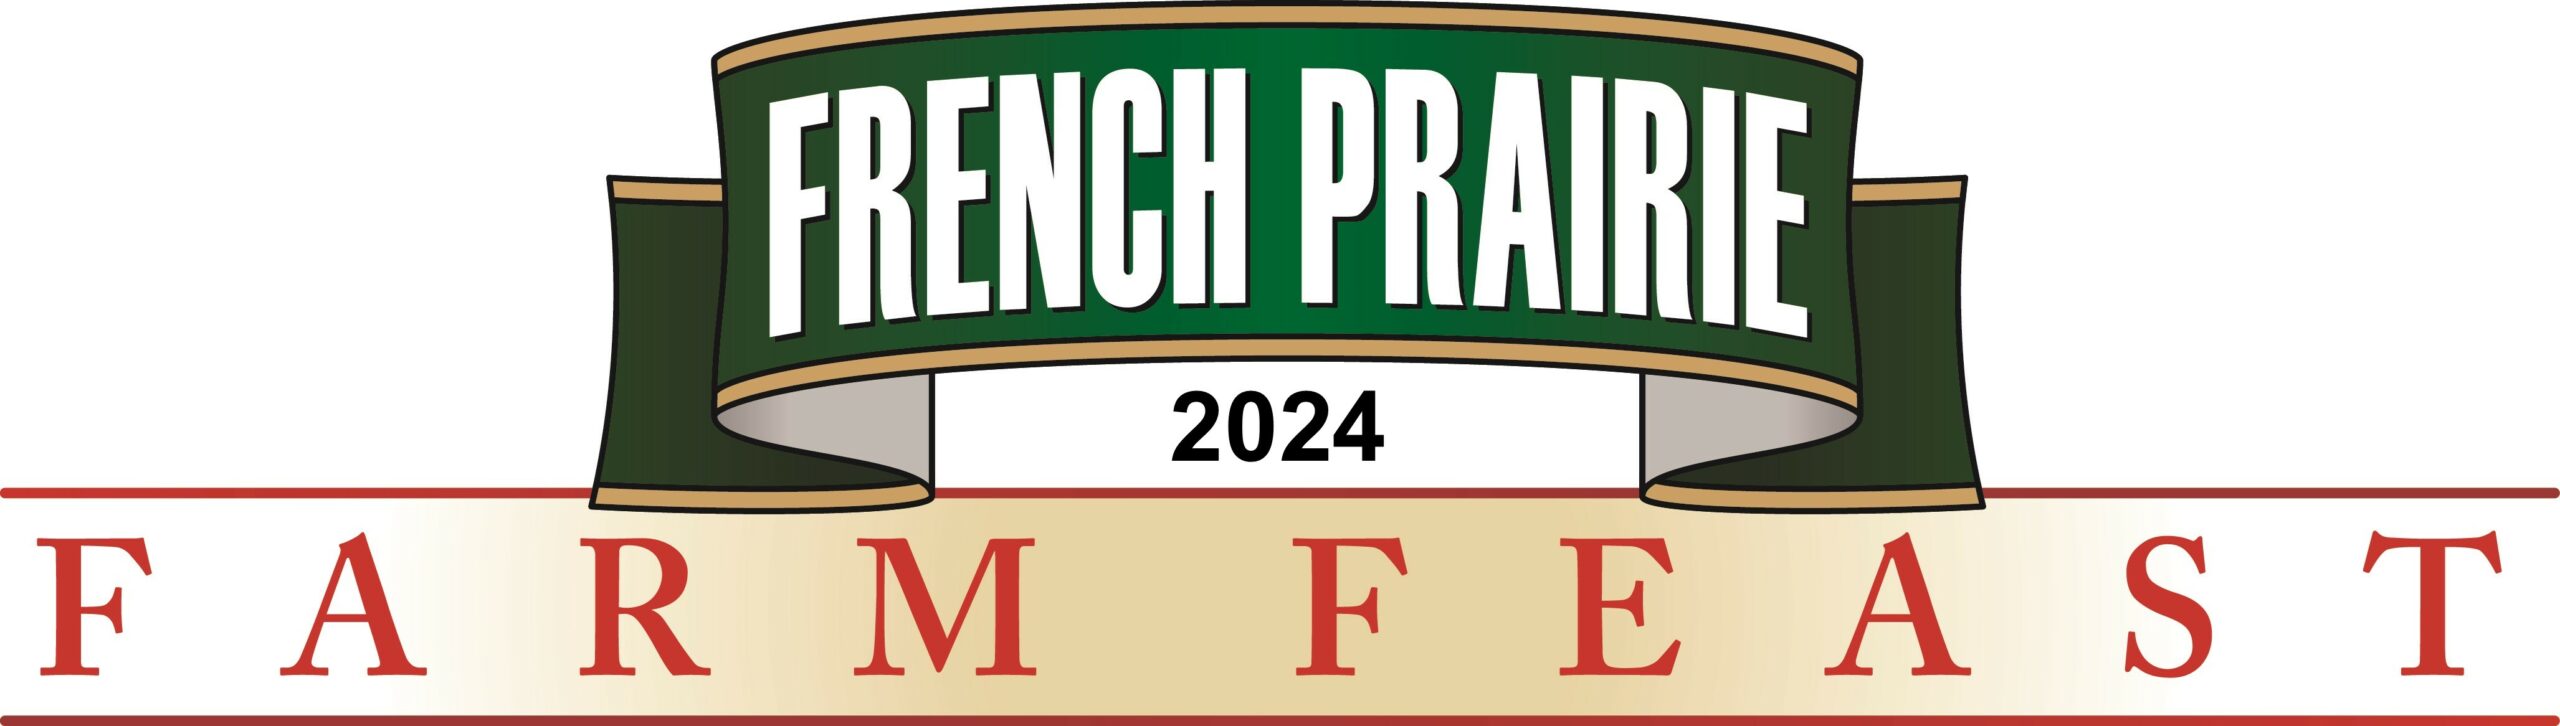 French Prairie Farm Feast 2024